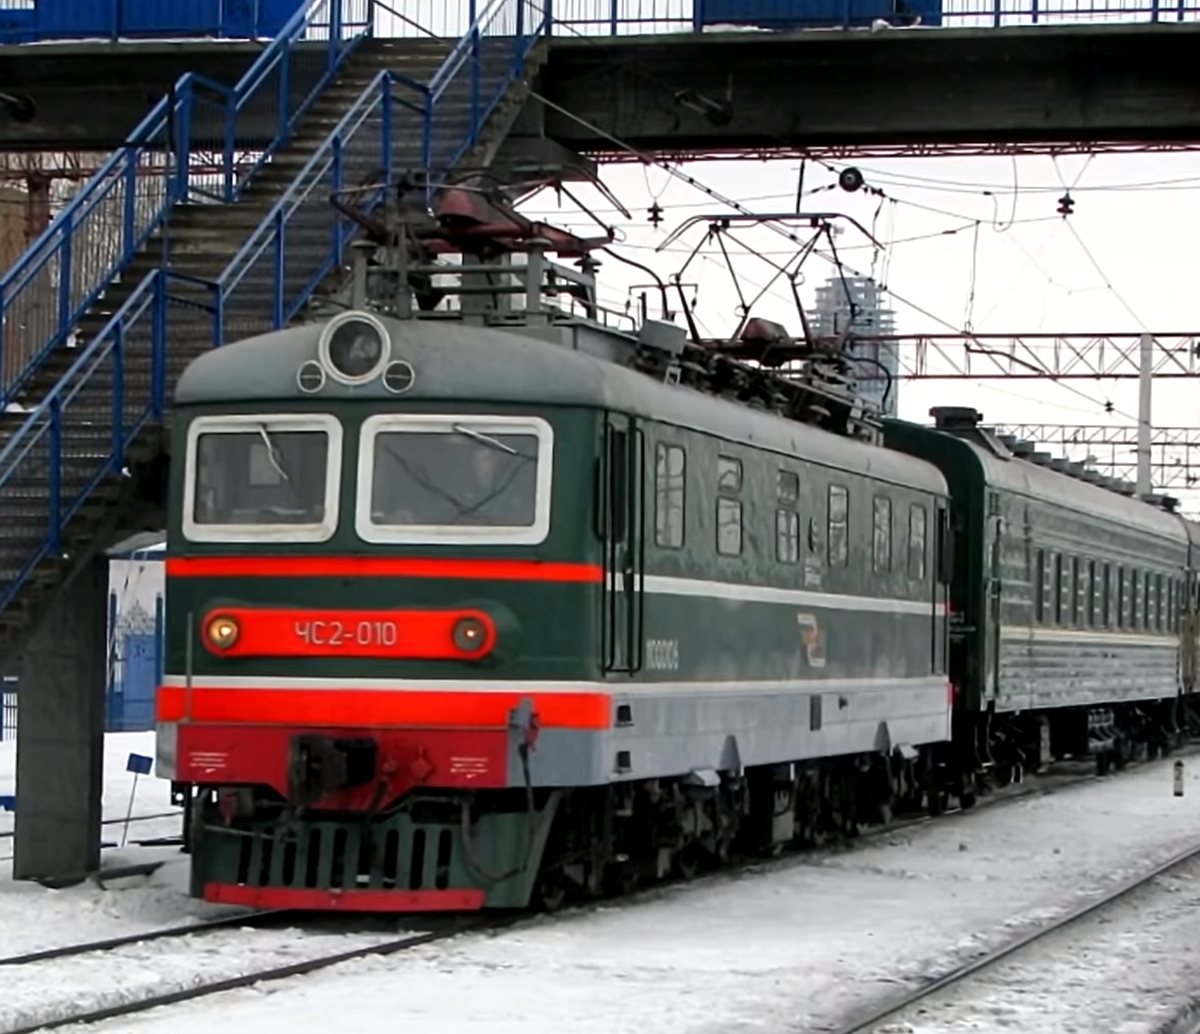 Skoda ChS2 - Sovyet hızlı trenleri için bir lokomotif